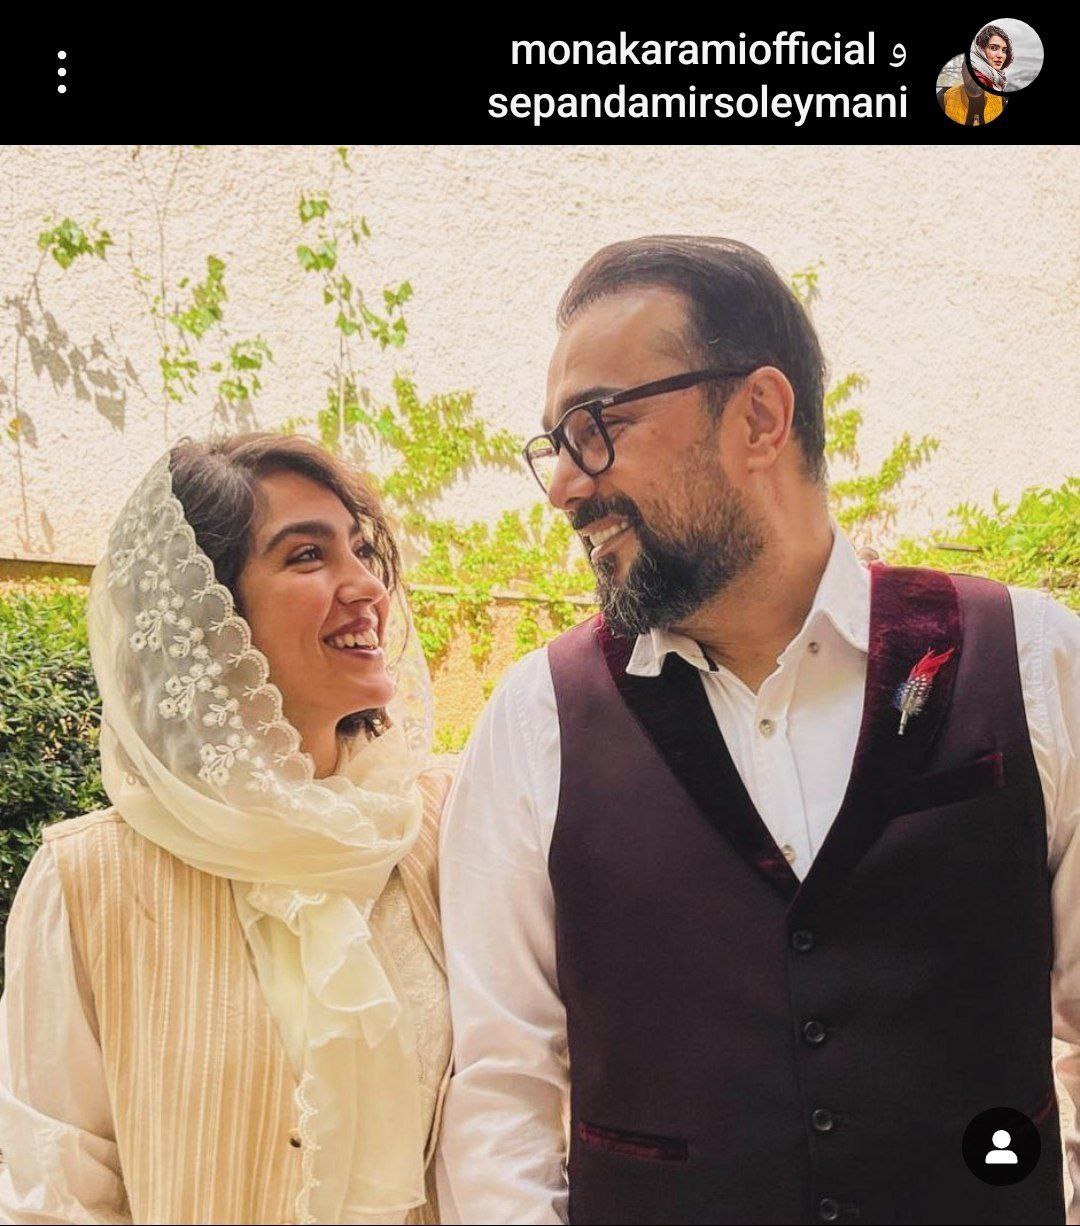 سپند امیرسلیمانی و خانم بازیگر ازدواج کردند +عکس